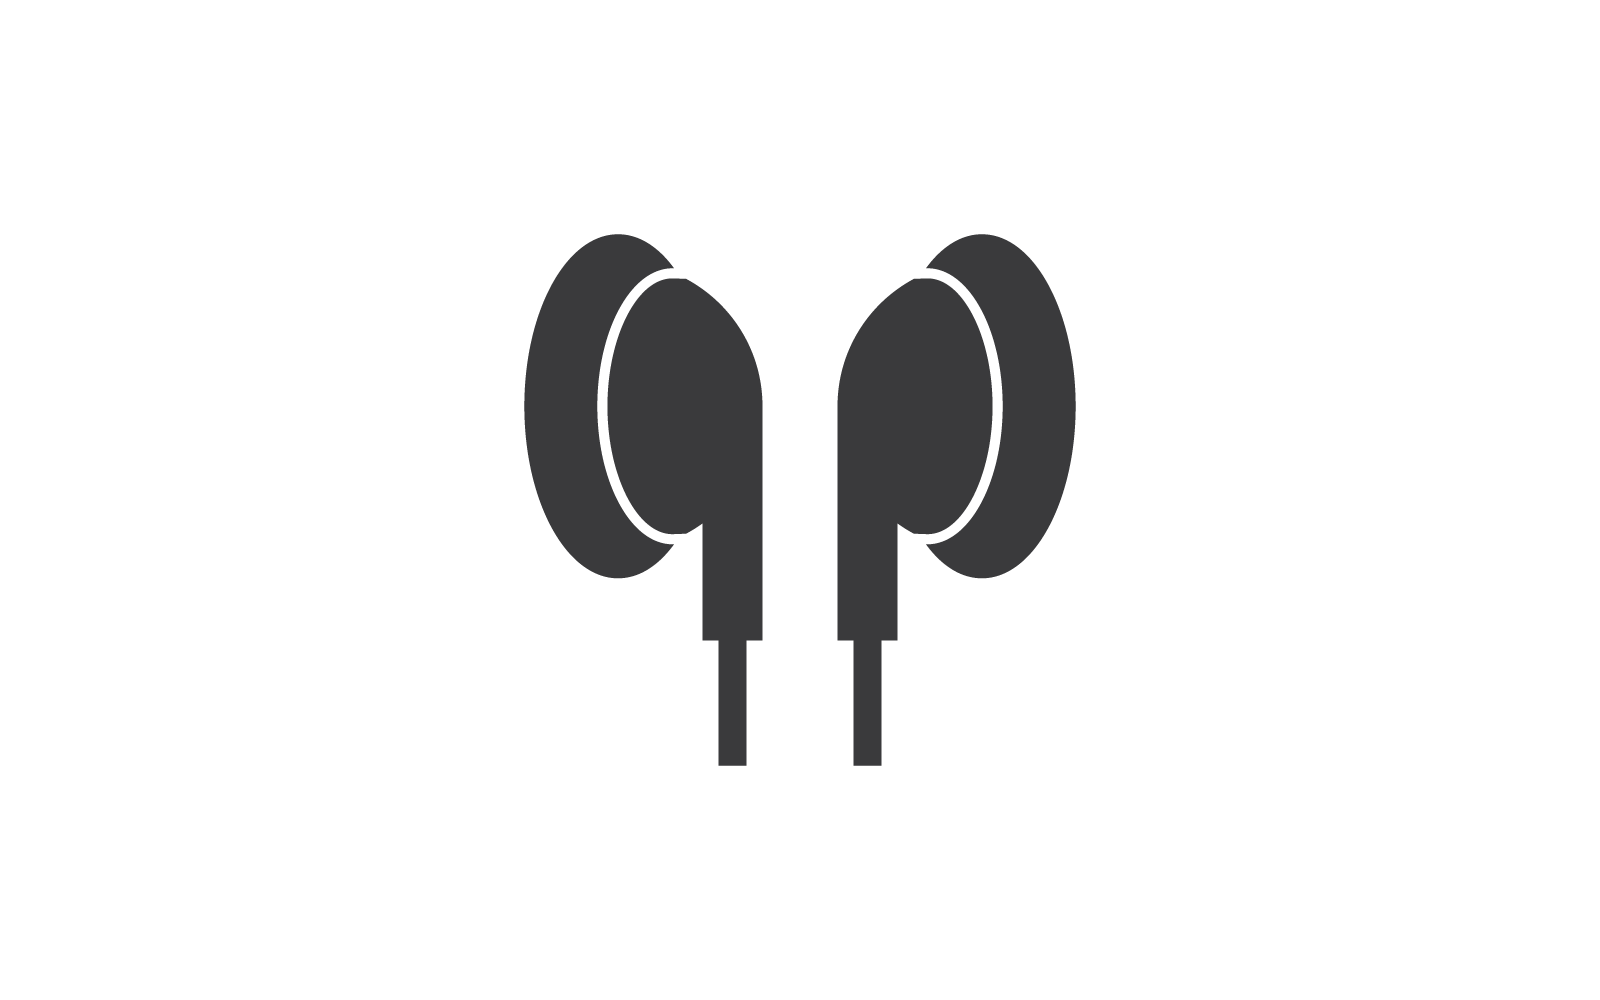 Auriculares, diseño del ejemplo del vector del icono del auricular